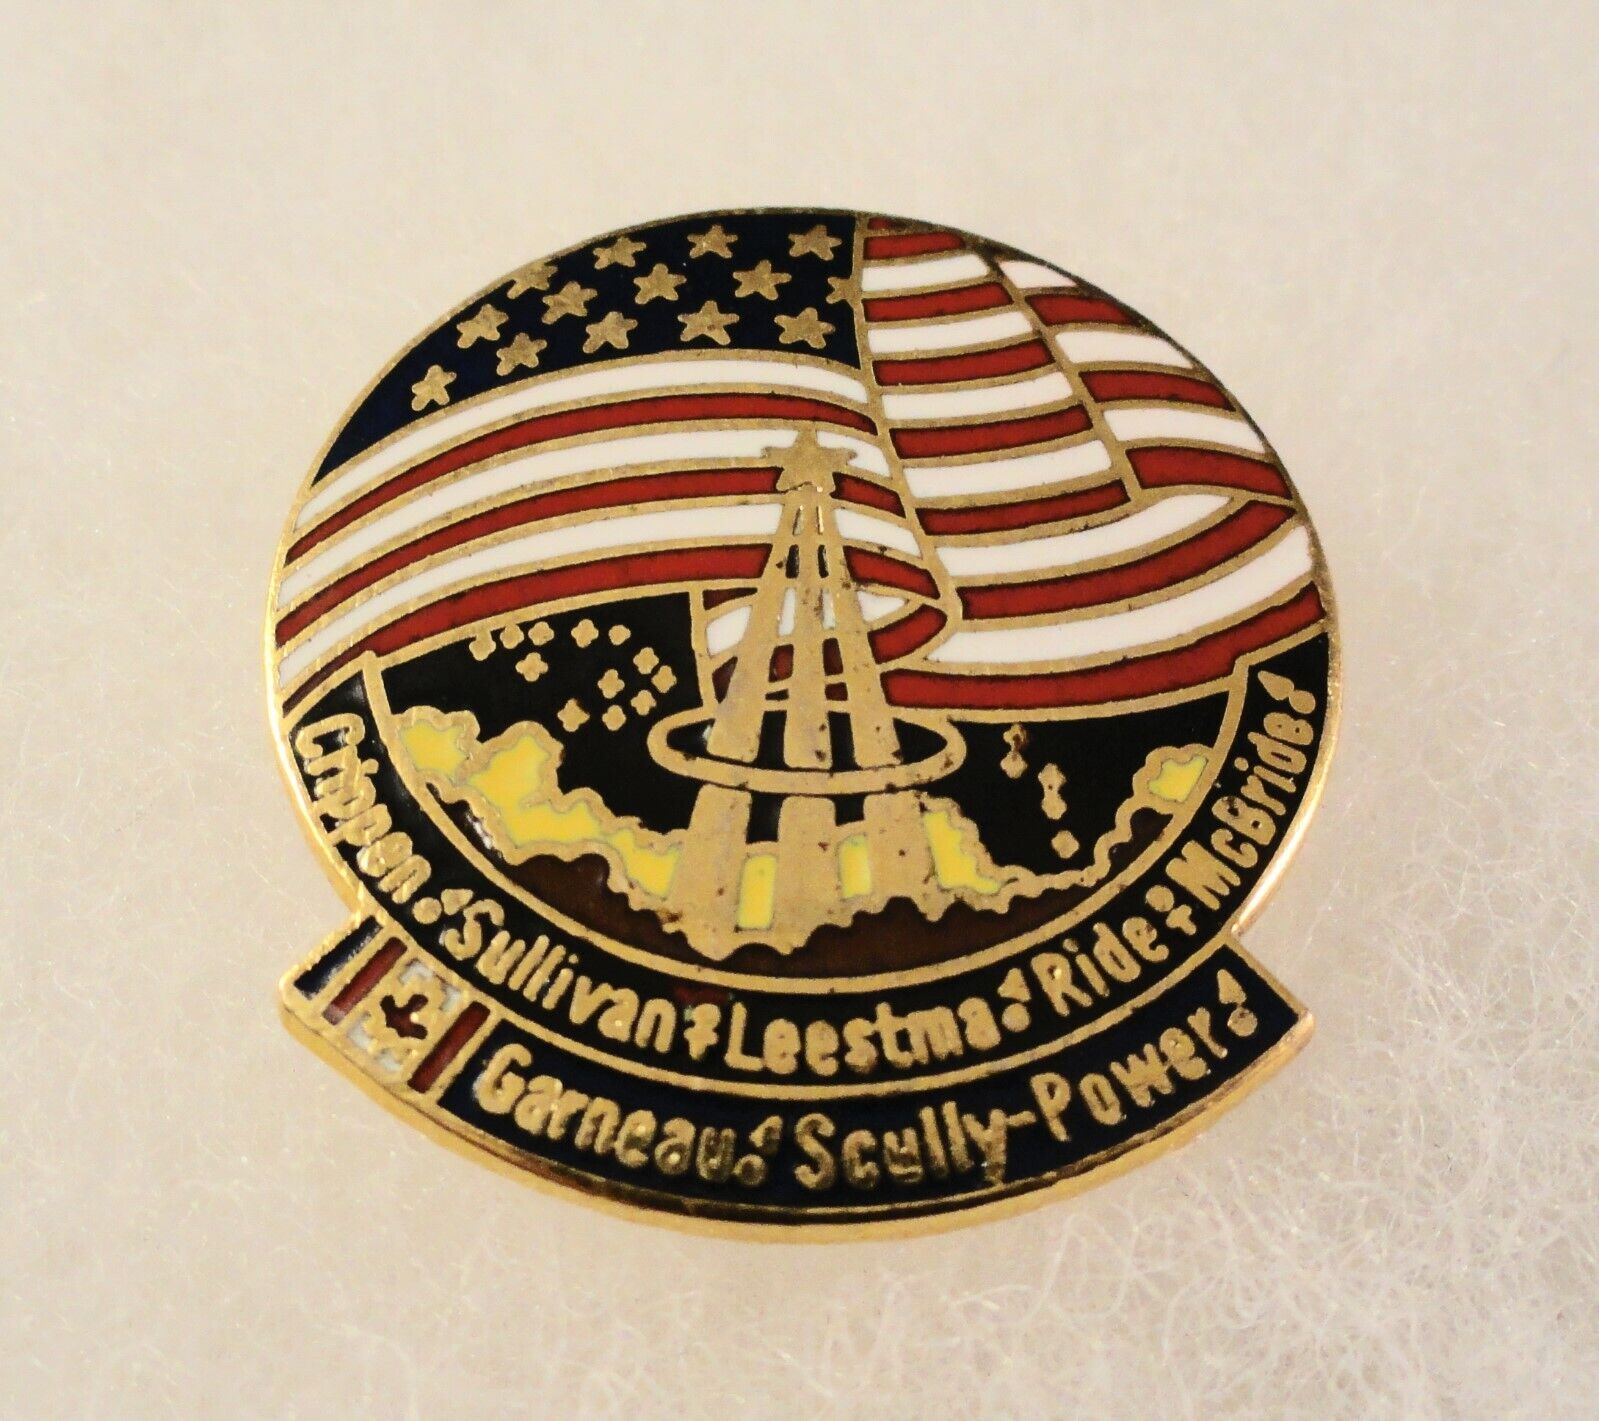 1 Lapel / Hat Pin(s) - Vintage 1980s Era - OFFICIAL NASA STS-41G cloisonne